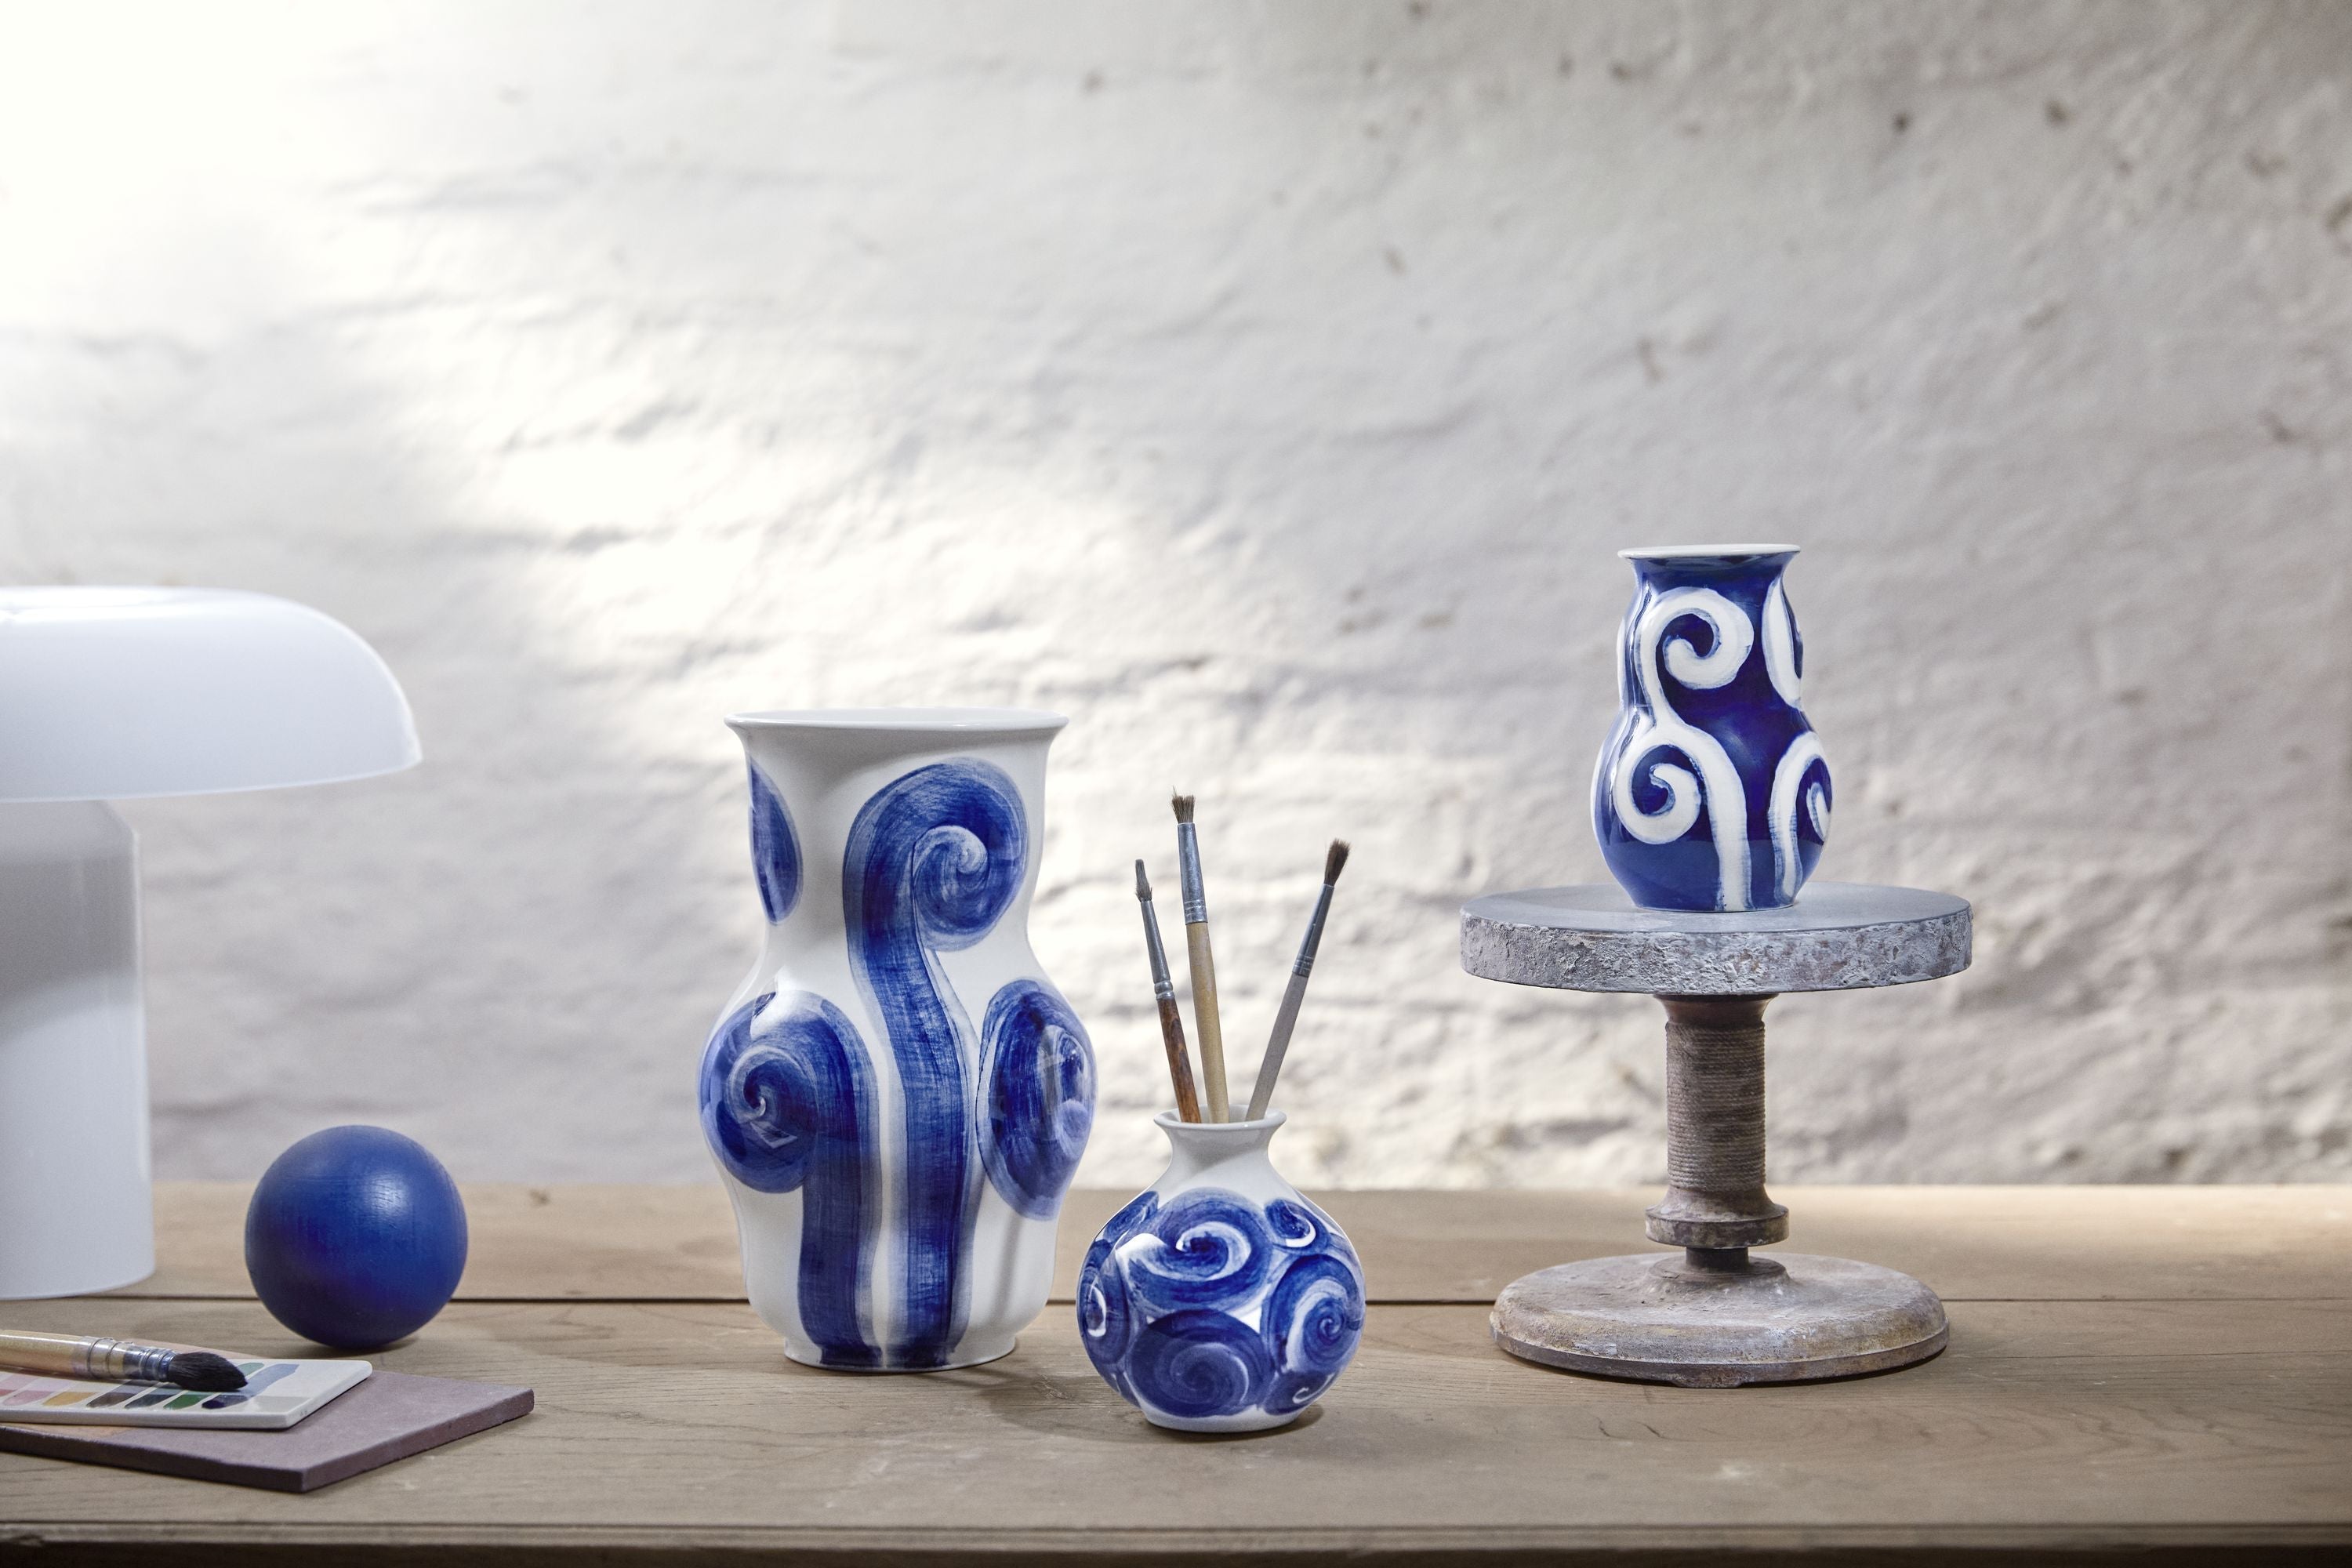 Kähler Tulle Vase H10,5 cm blå